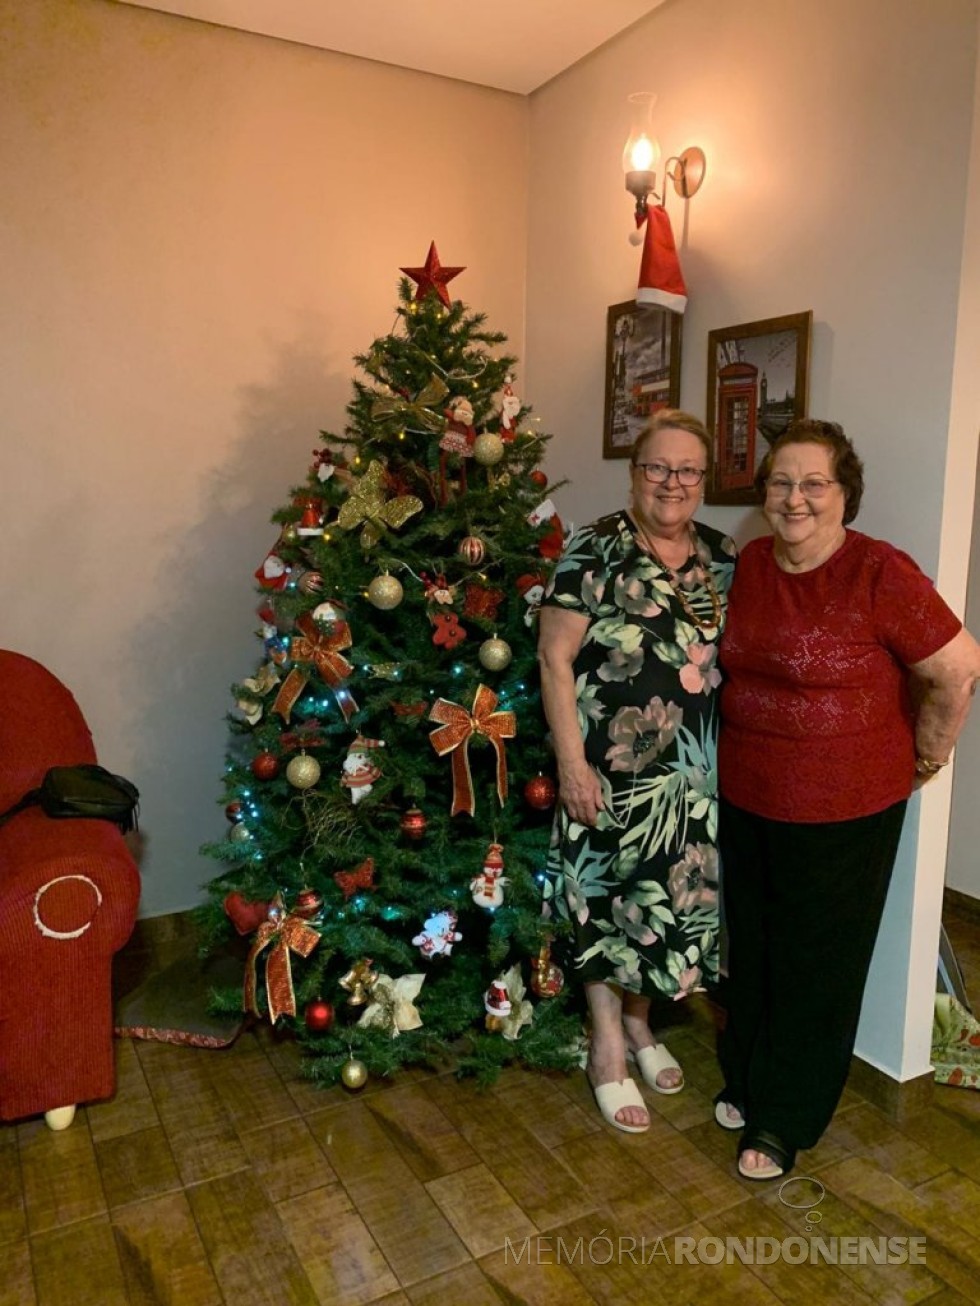 || Árvore de natal na residência de Brunhilde e Elizabet Thessing (mãe e filha), em dezembro de 2021.
Imagem: Acervo pessoal - FOTO 7 - 